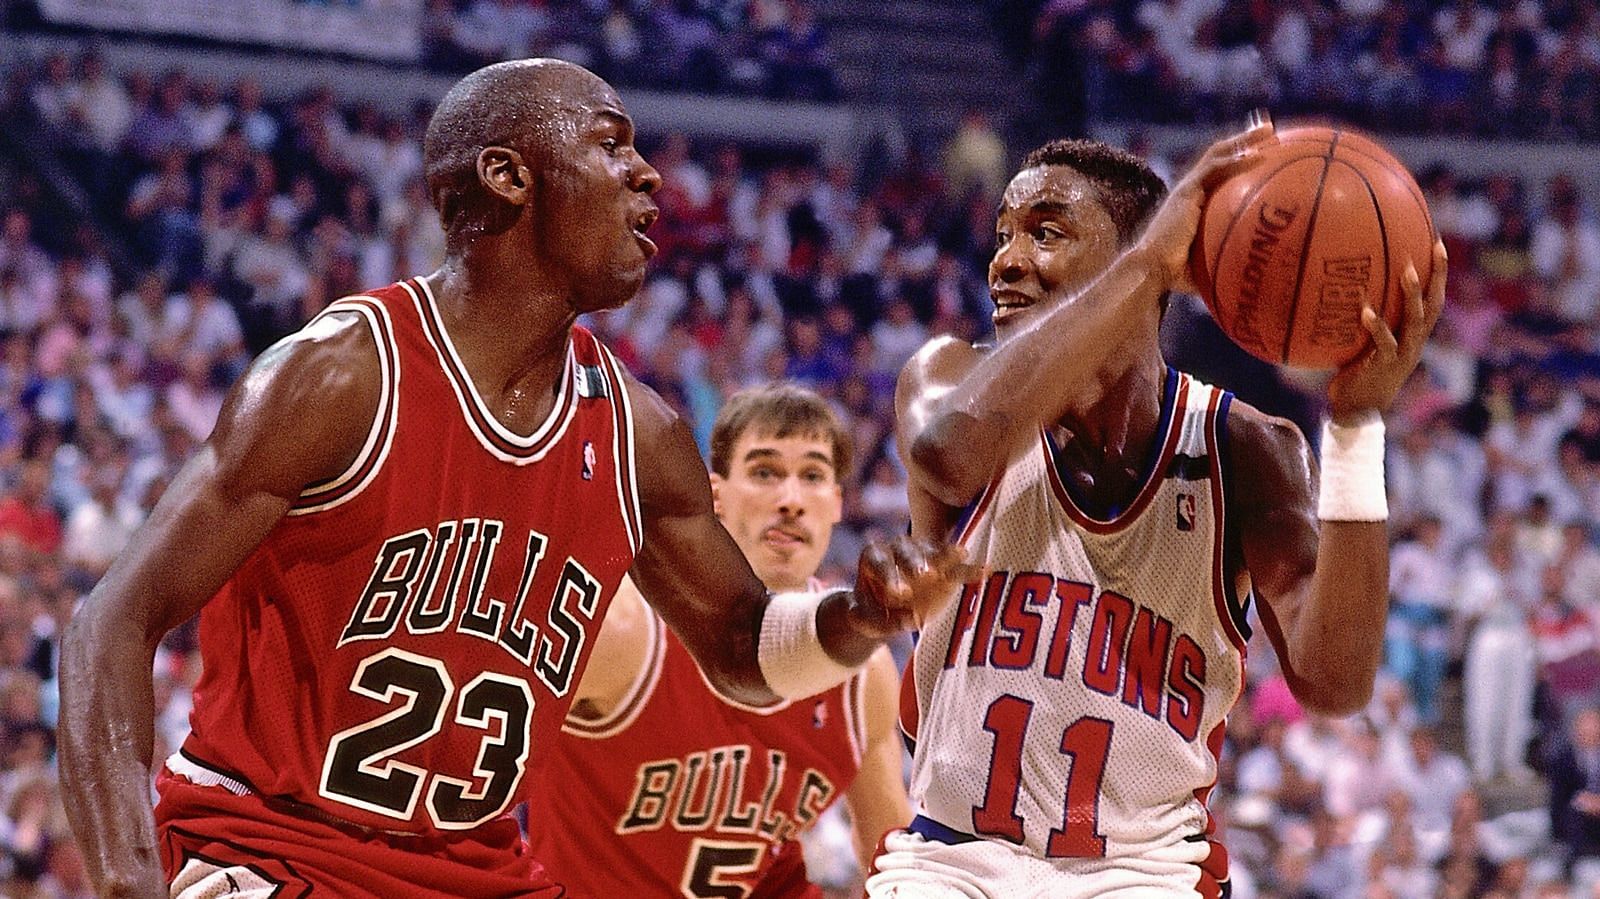 Michael Jordan and Isiah Thomas (Photo: NBA.com)